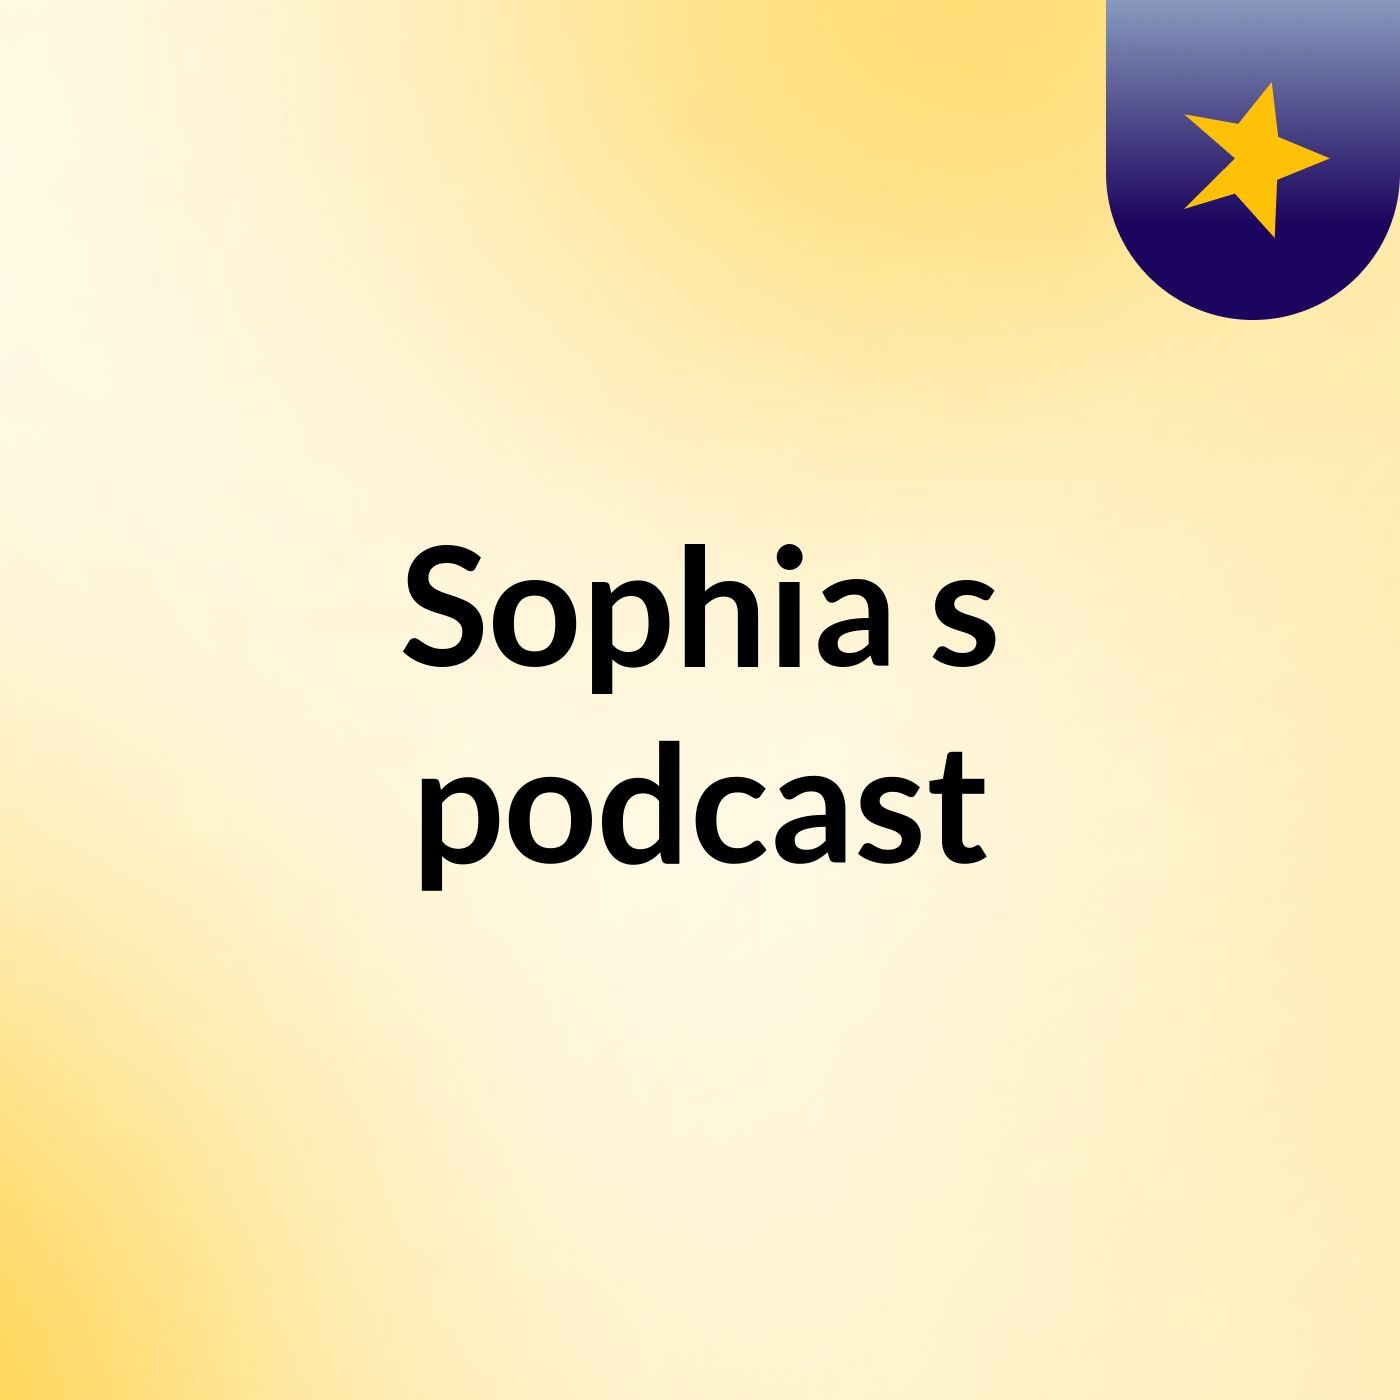 Episode 2 - Sophia's podcast